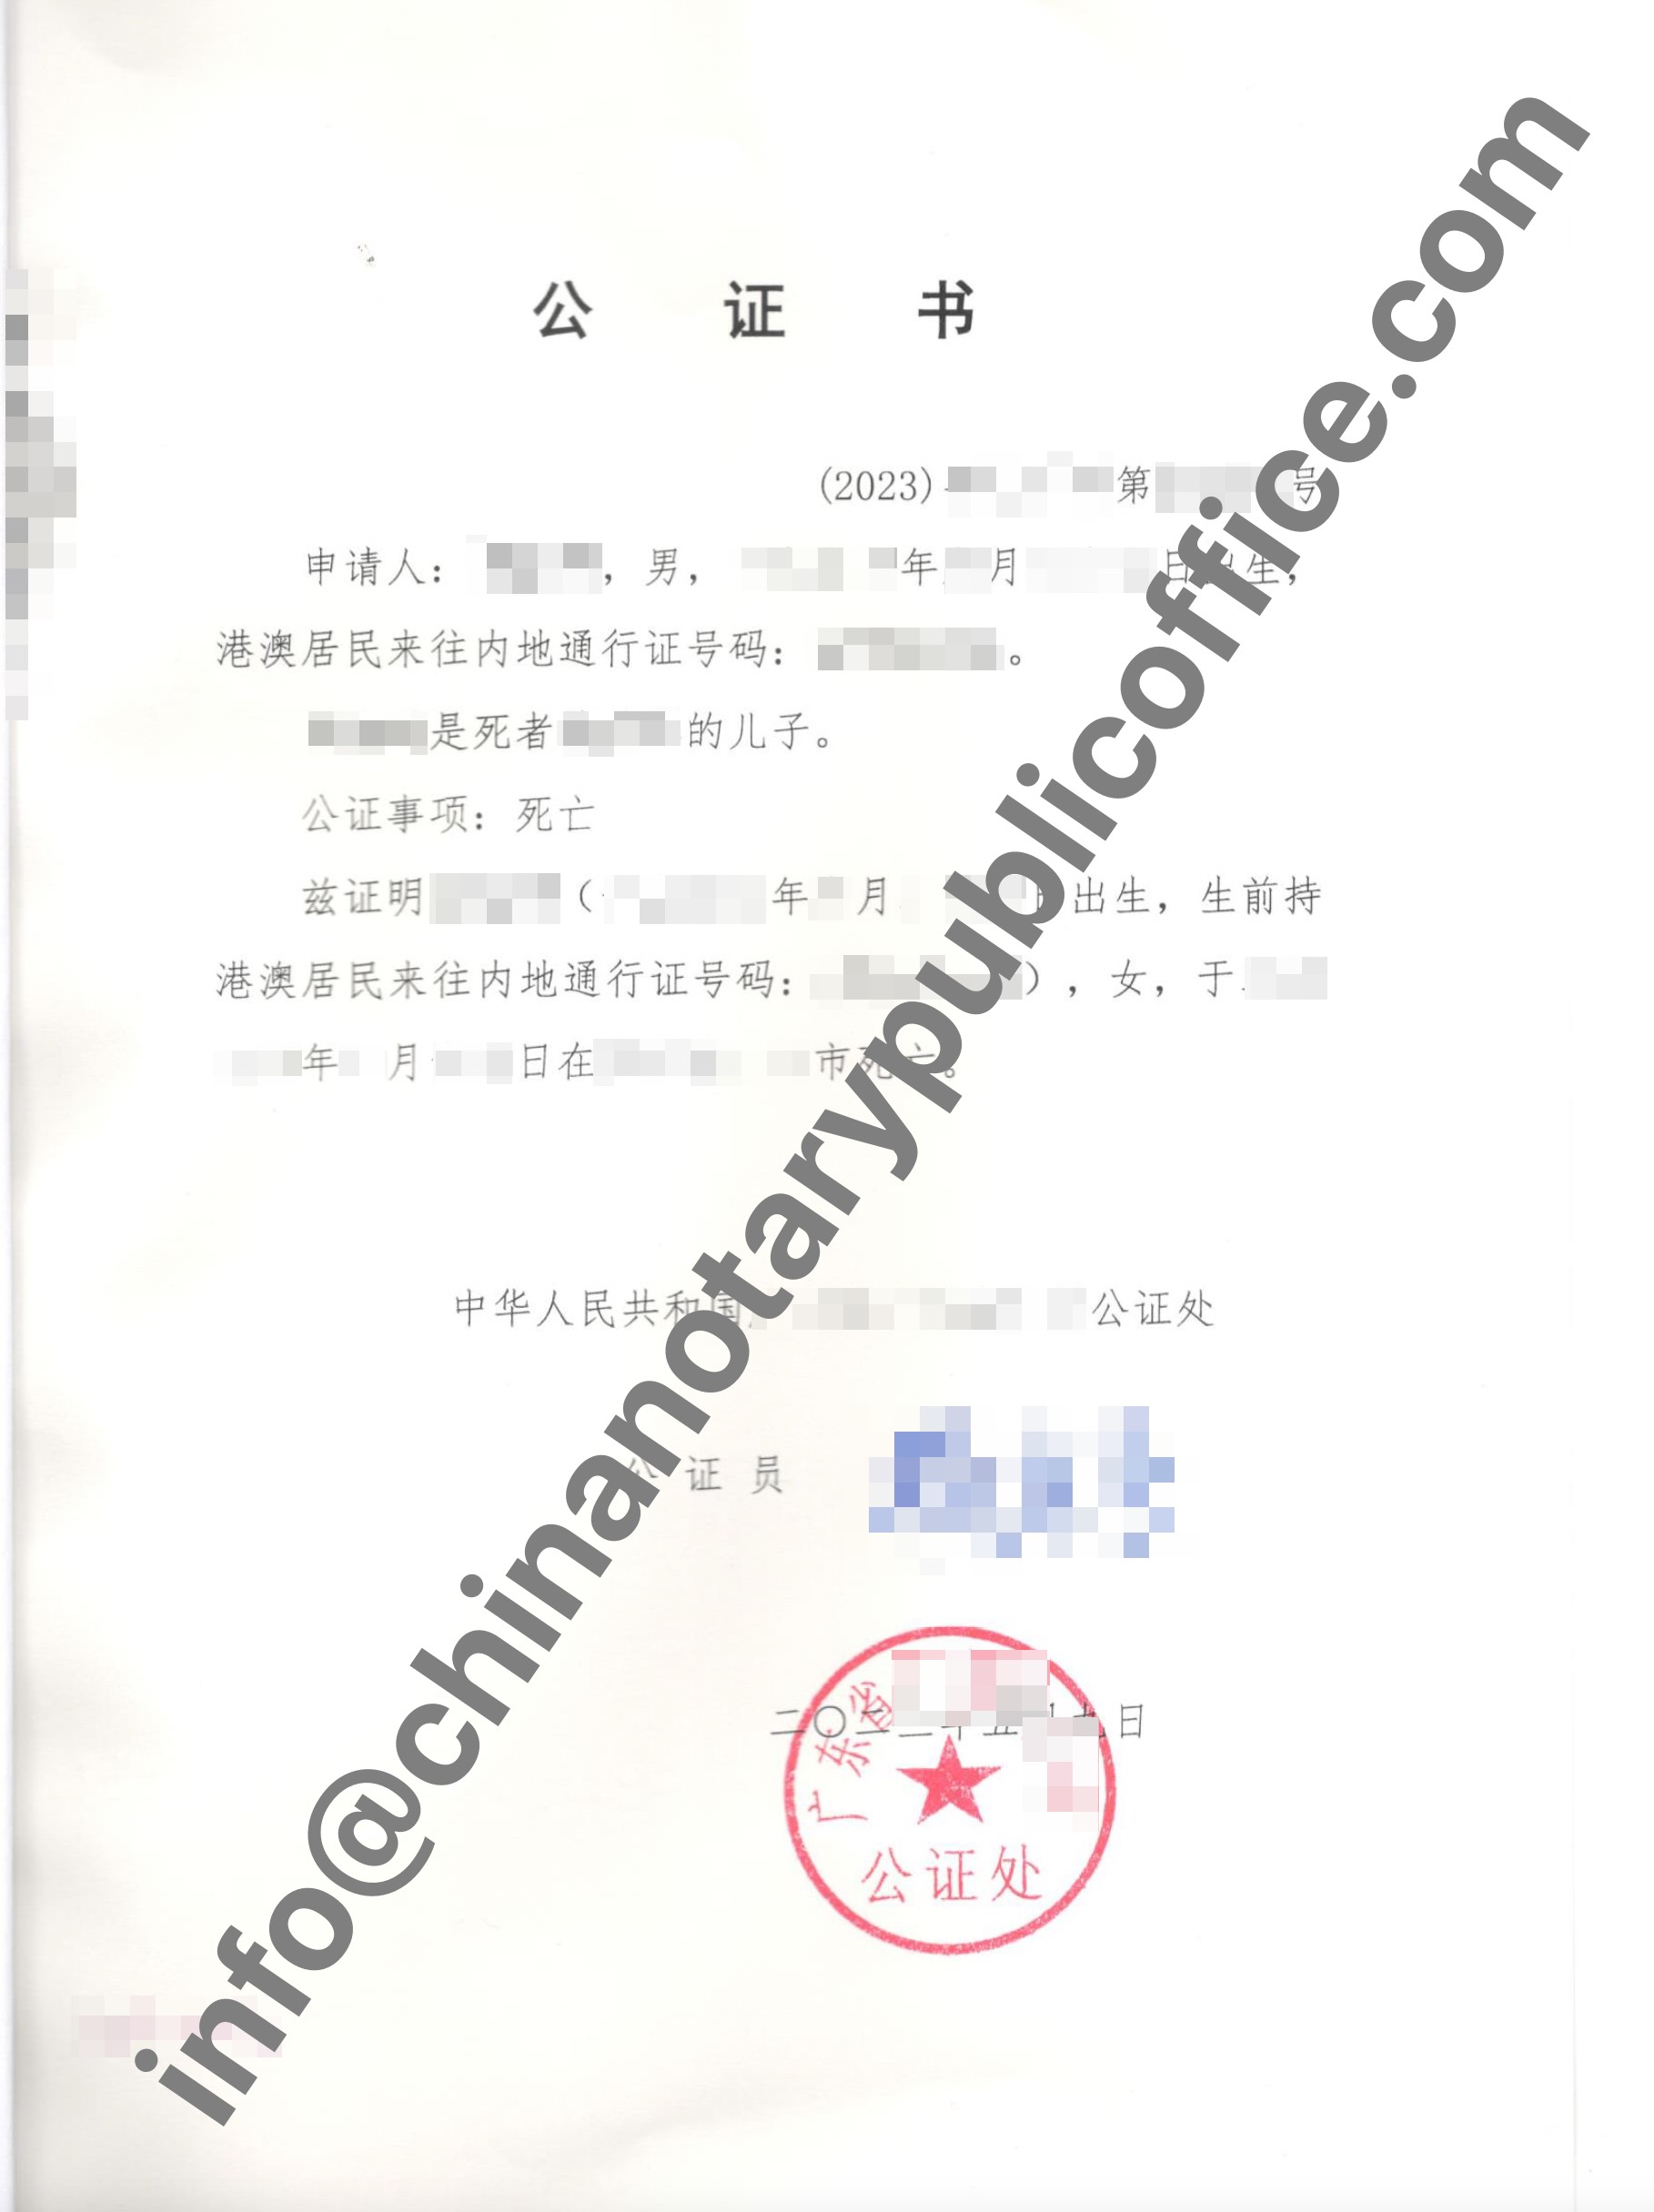 如何办理死亡公证书，中国公证处海外服务中心